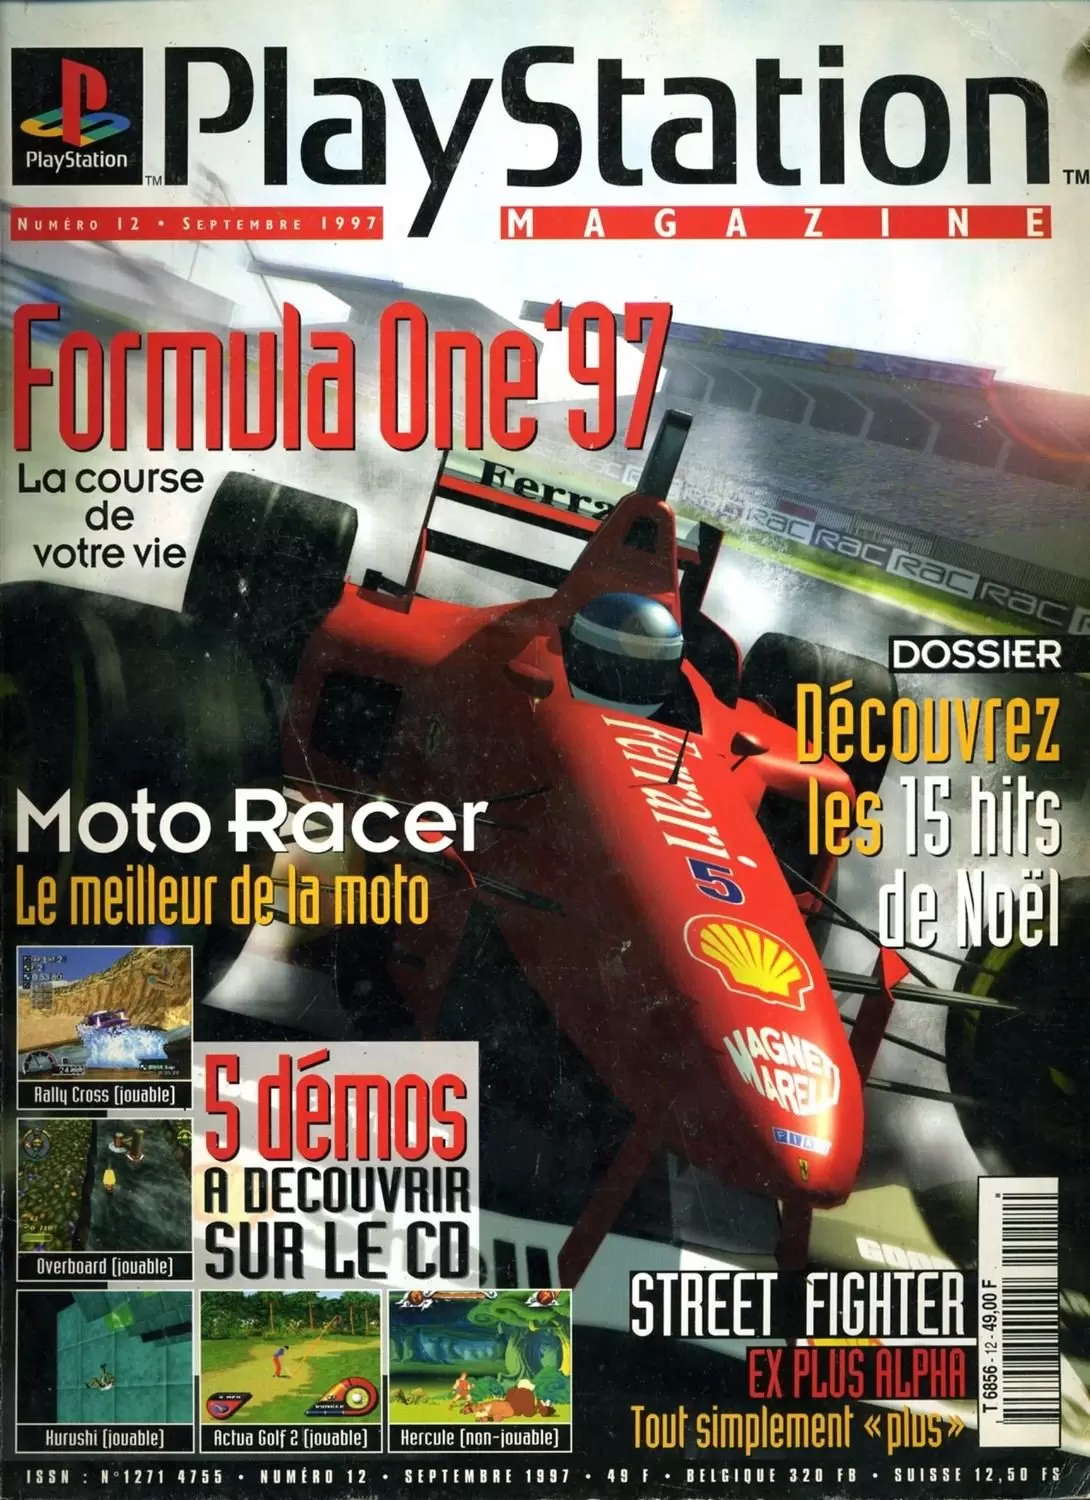 Playstation Magazine - Playstation Magazine #12